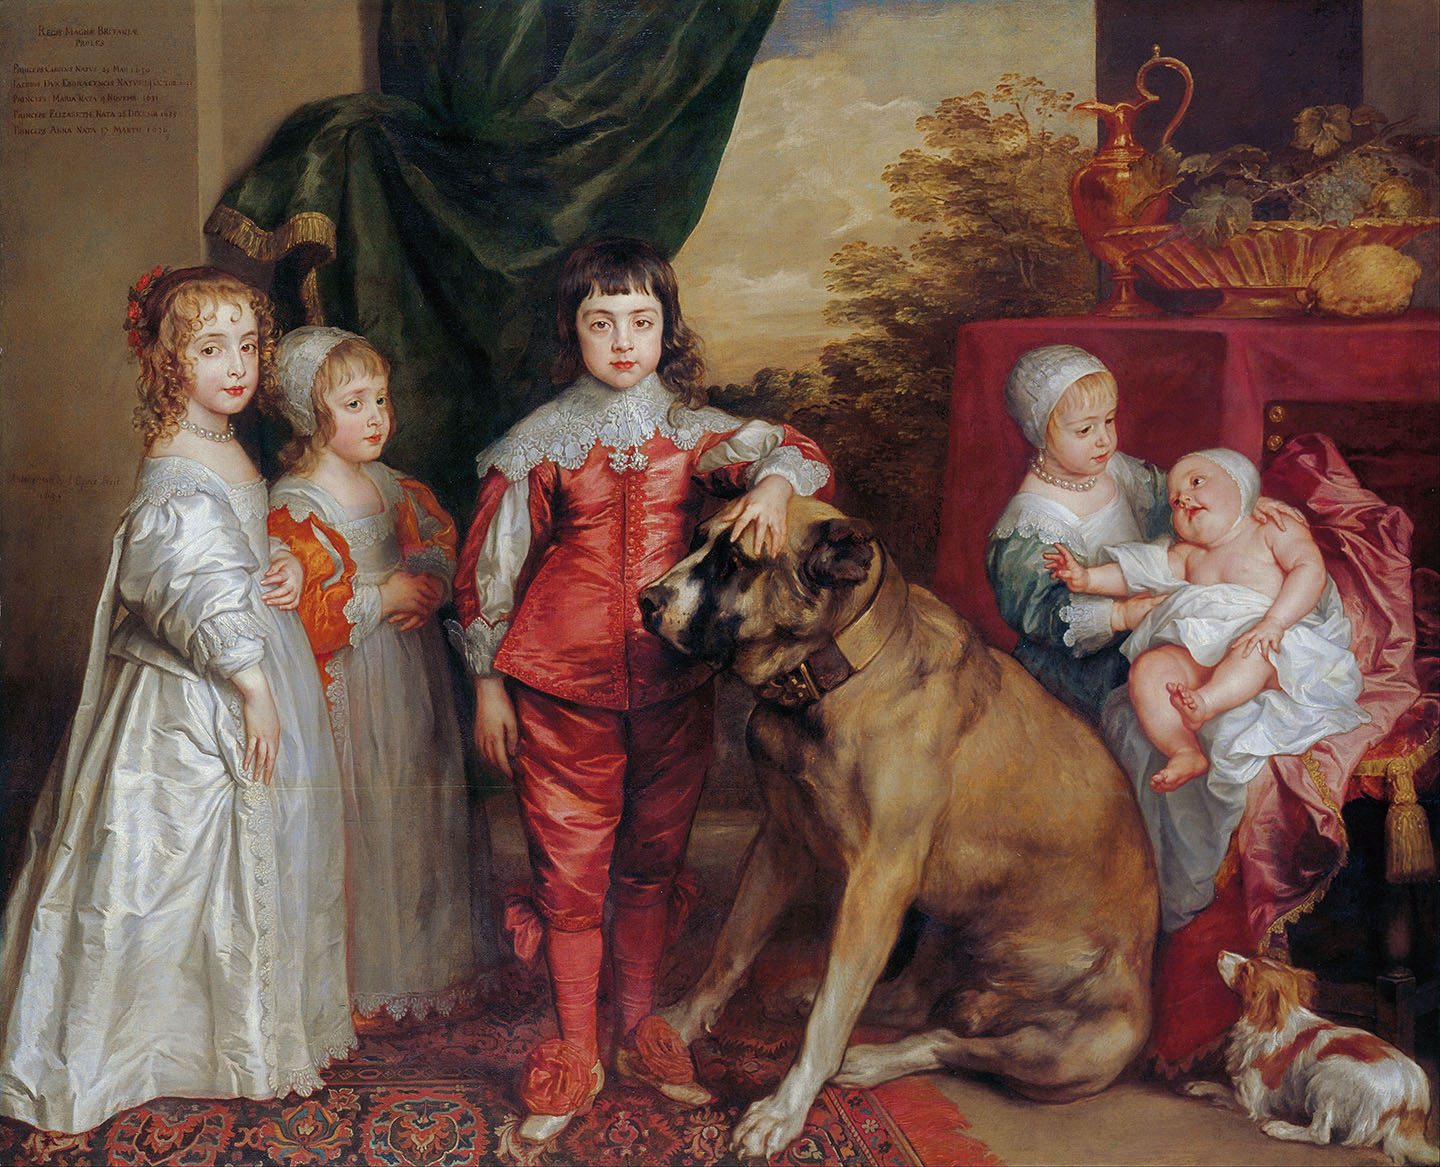 Tác phẩm “The Five Eldest Children of Charles I” (Năm người con lớn của Vua Charles Đệ nhất) của danh họa Anthony van Dyck, vẽ năm 1637. Tranh sơn dầu trên vải canvas, kích thước: 64,2 inch x 78,2 inch. Bộ sưu tập Hoàng gia, Vương quốc Anh. (Ảnh: Tài liệu công cộng)